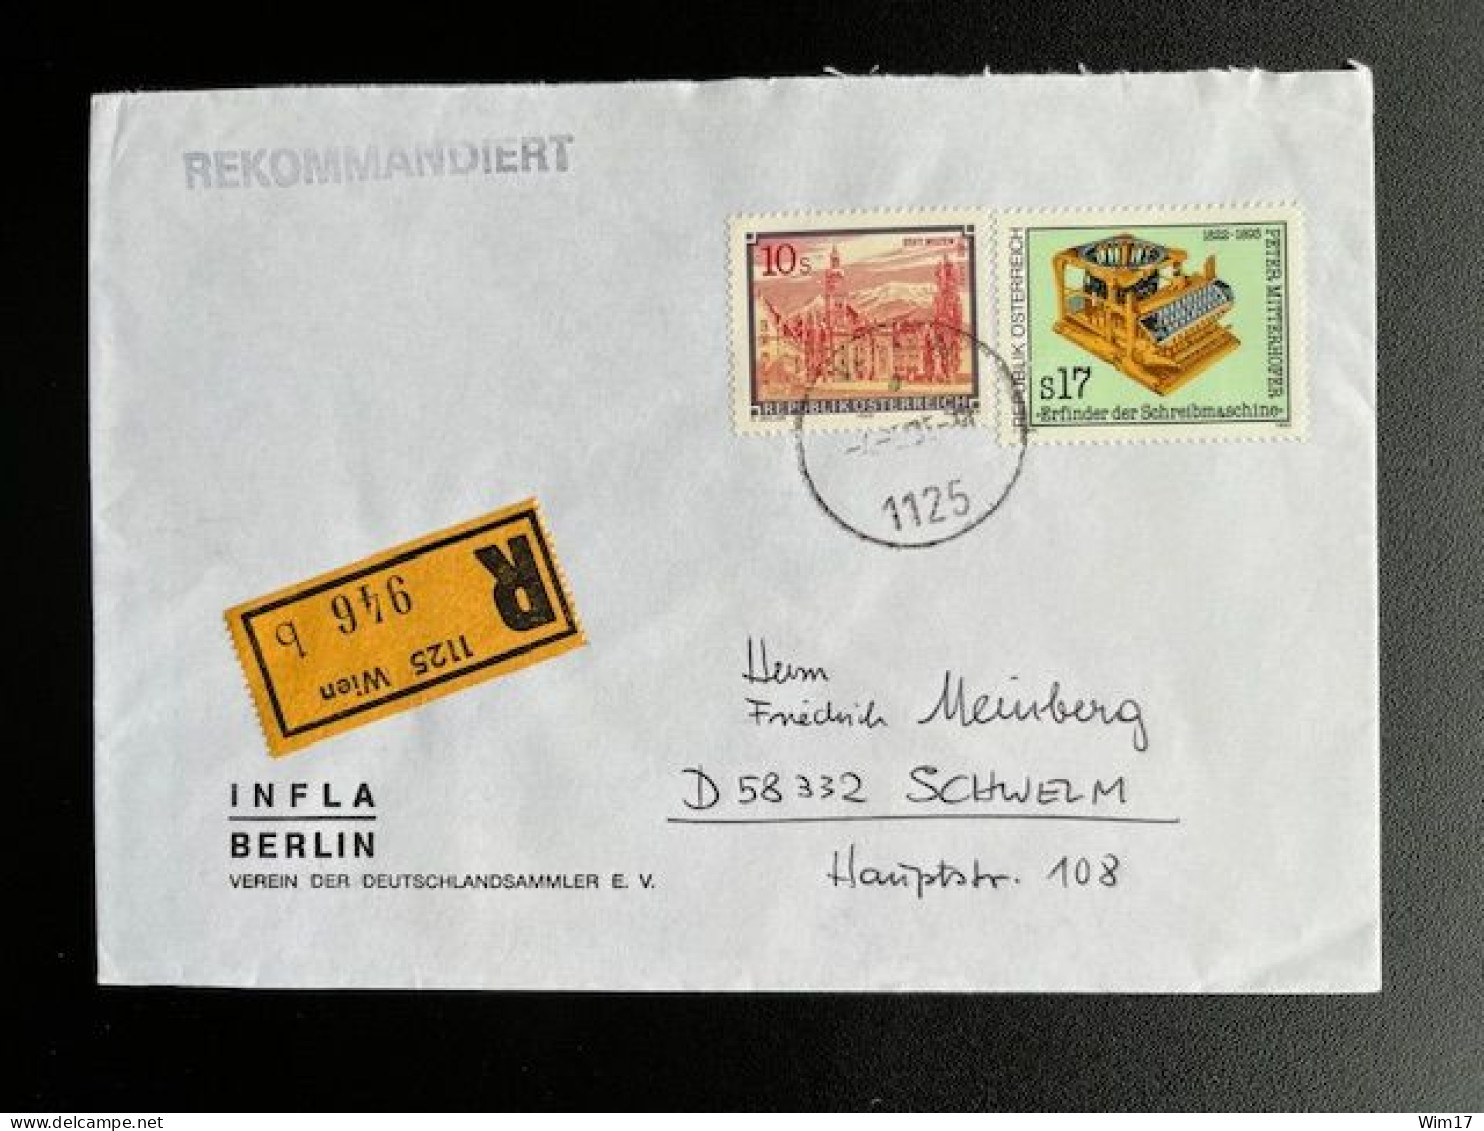 AUSTRIA 1995 REGISTERED LETTER VIENNA WIEN TO SCHWELM 04-05-1995 OOSTENRIJK OSTERREICH EINSCHREIBEN - Lettres & Documents